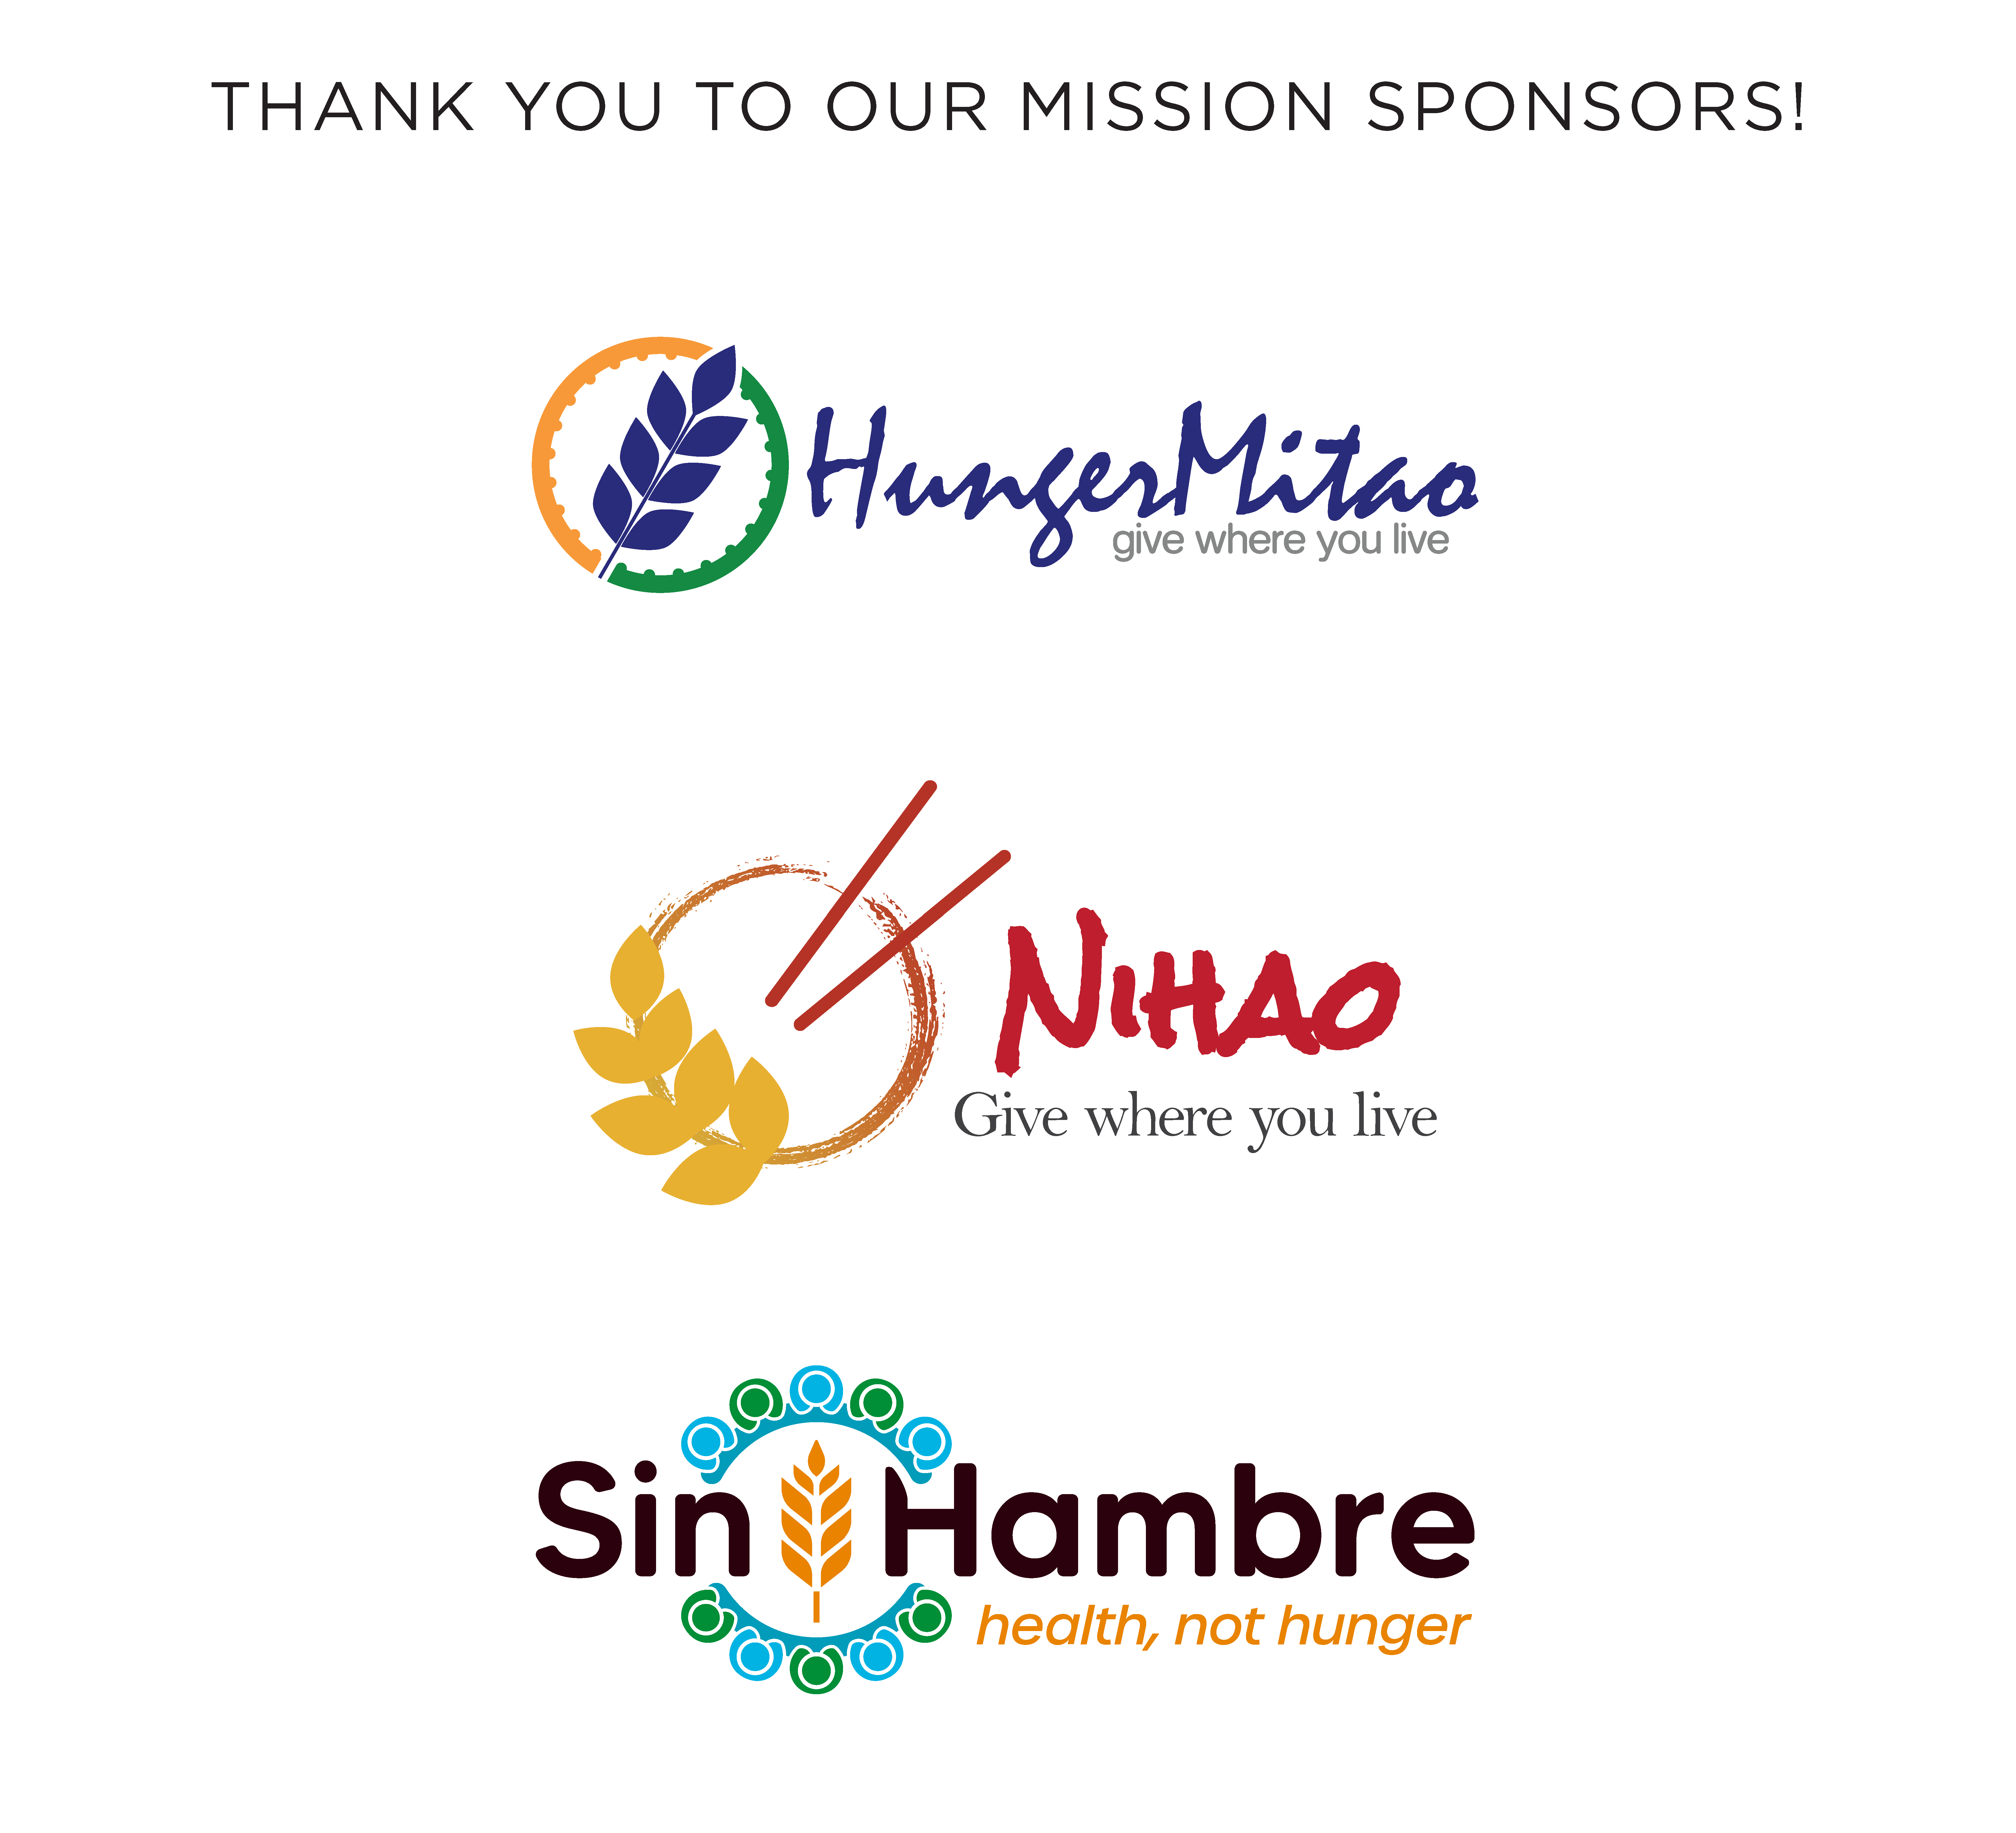 Mission Sponsors Image